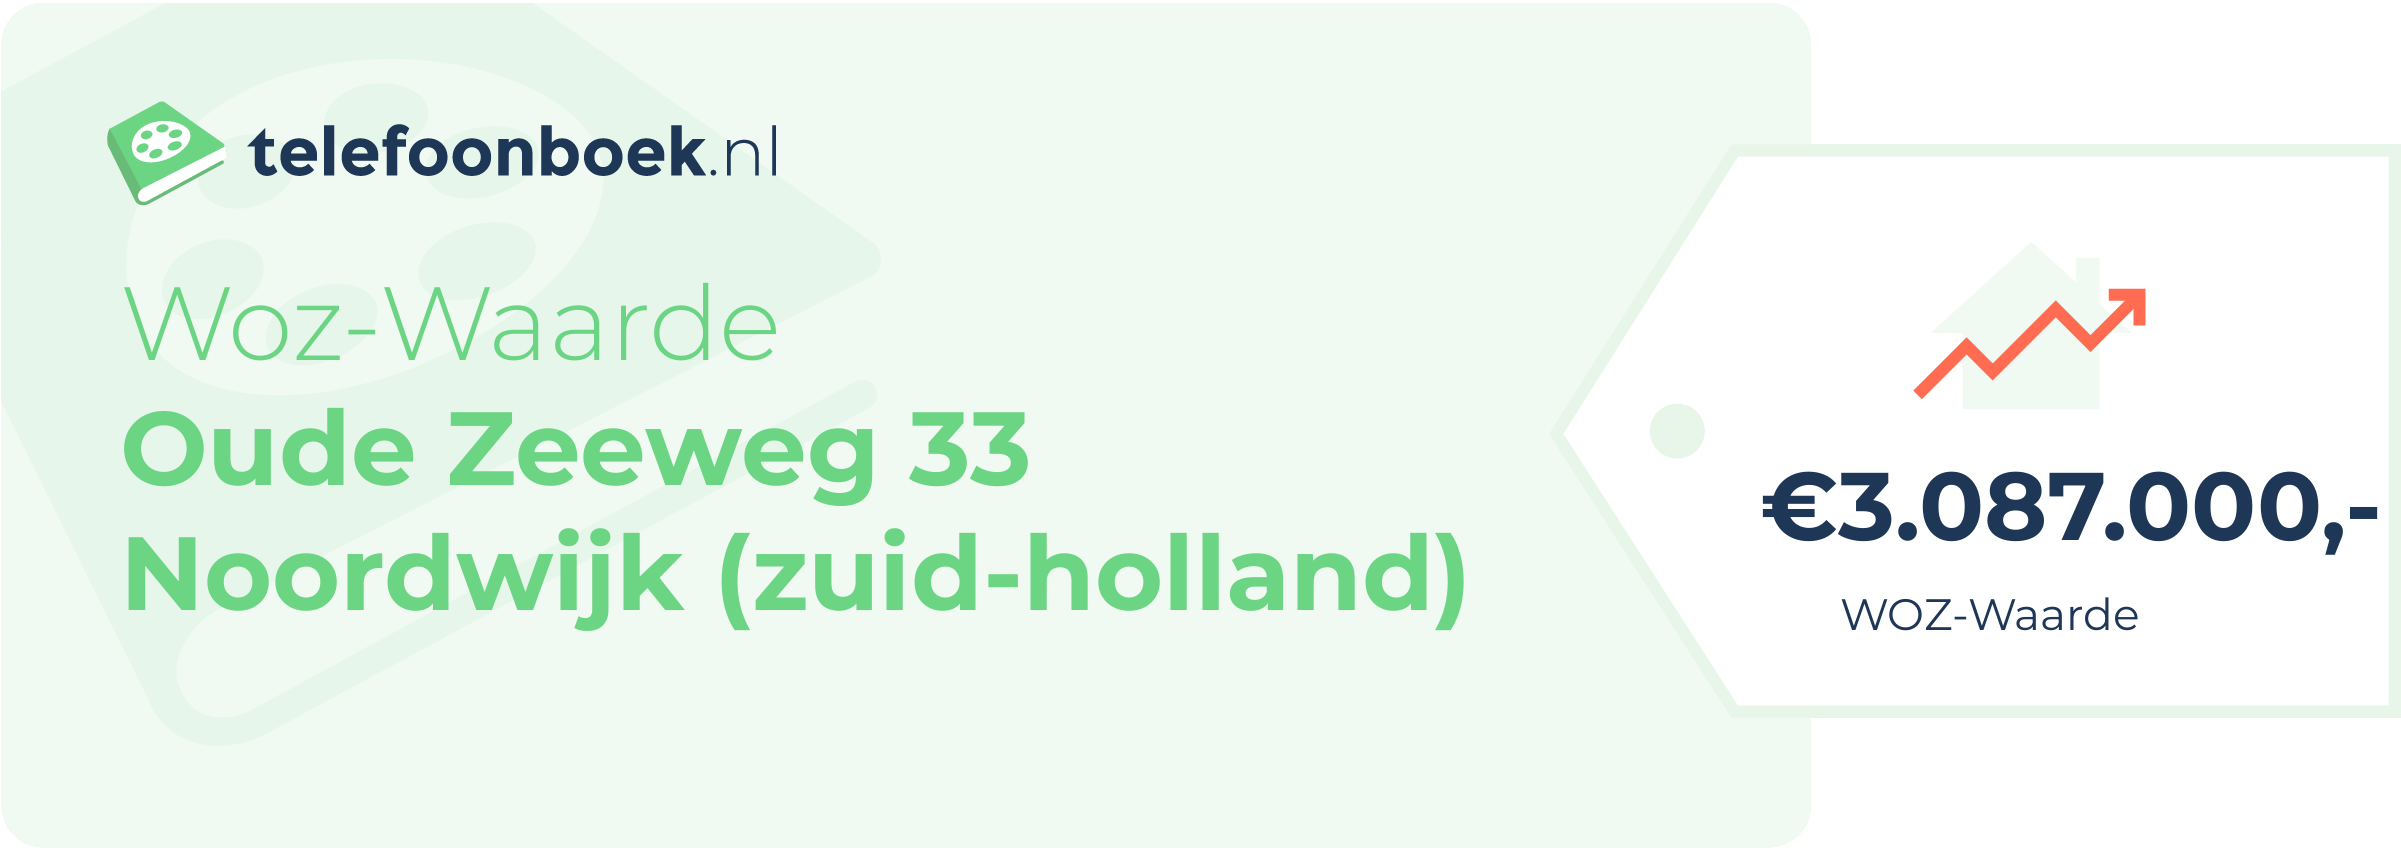 WOZ-waarde Oude Zeeweg 33 Noordwijk (Zuid-Holland)